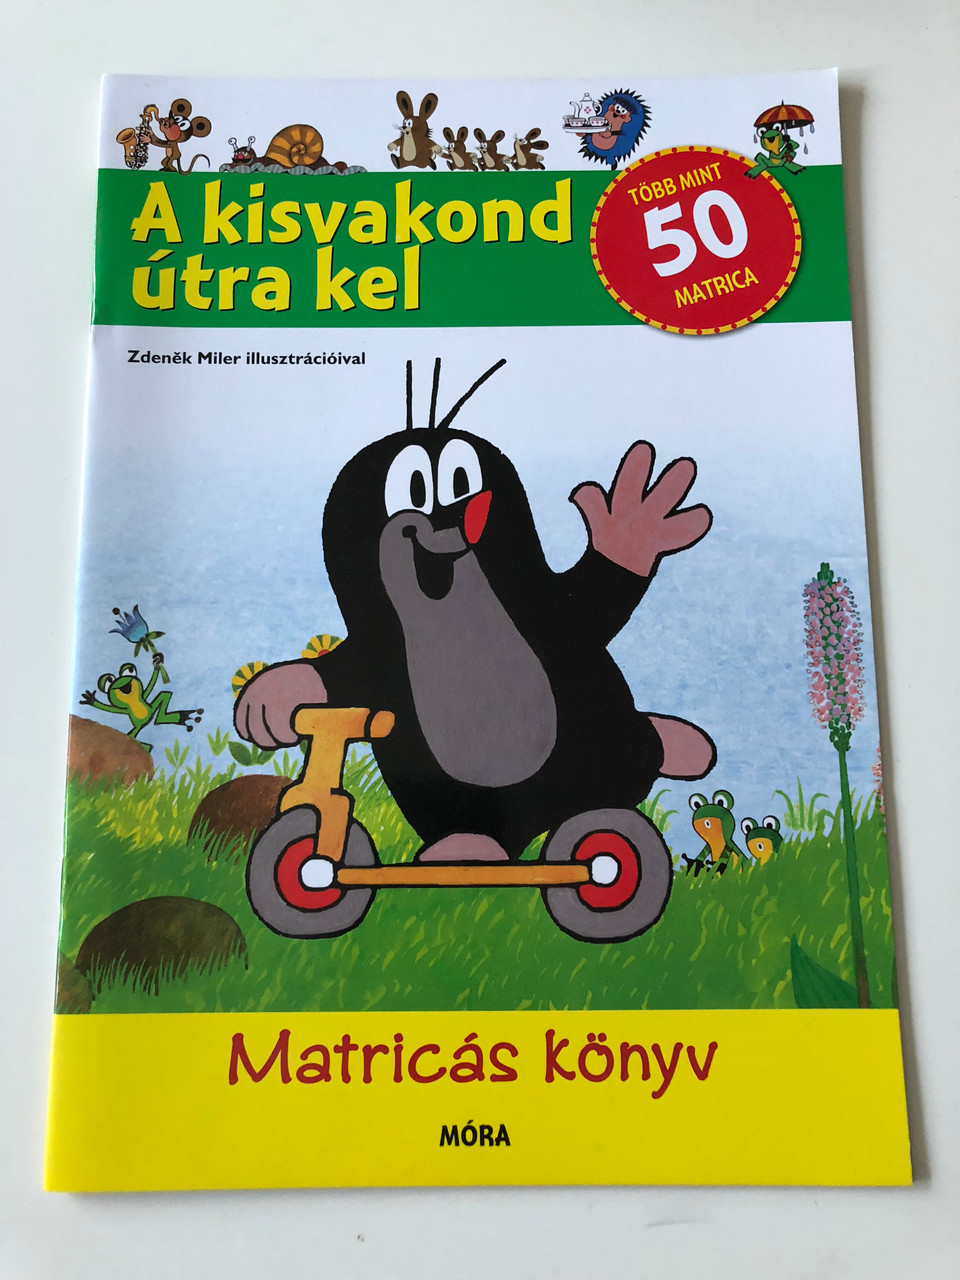 A kisvakond útra kel (The little mole goes on the road) by Zdeněk Miler /  Több mint